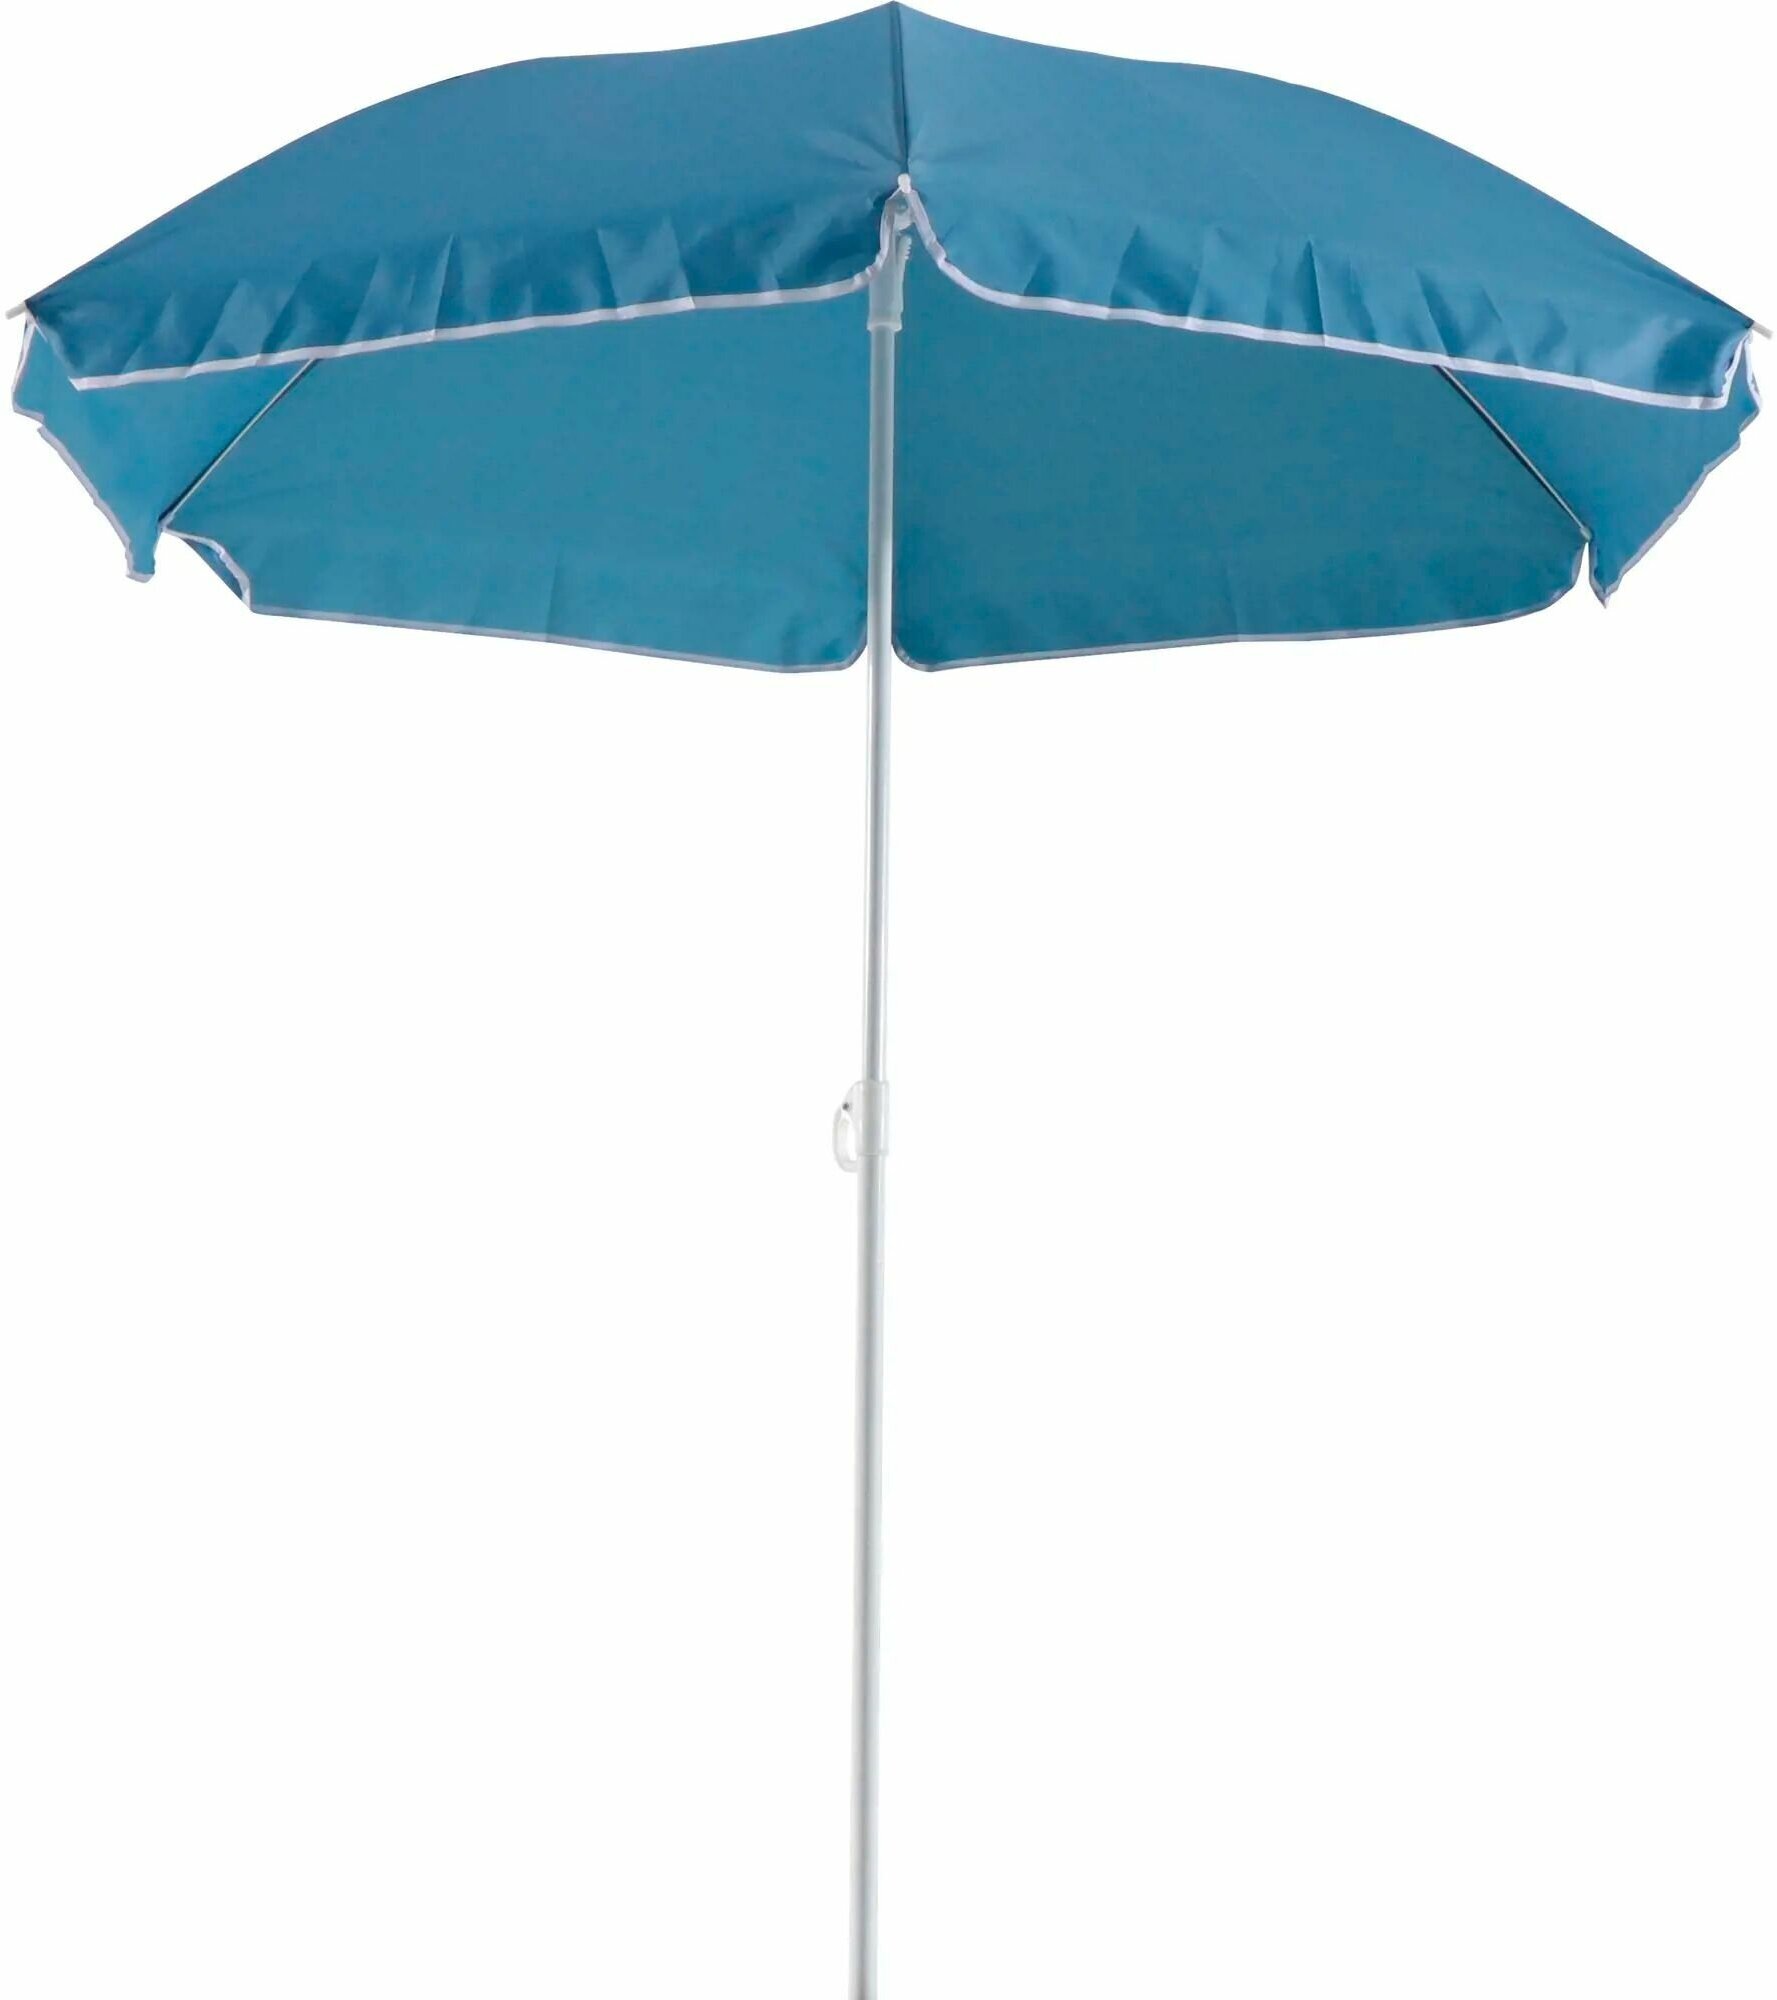 Пляжный зонт, диаметр 2м, высота 195 см